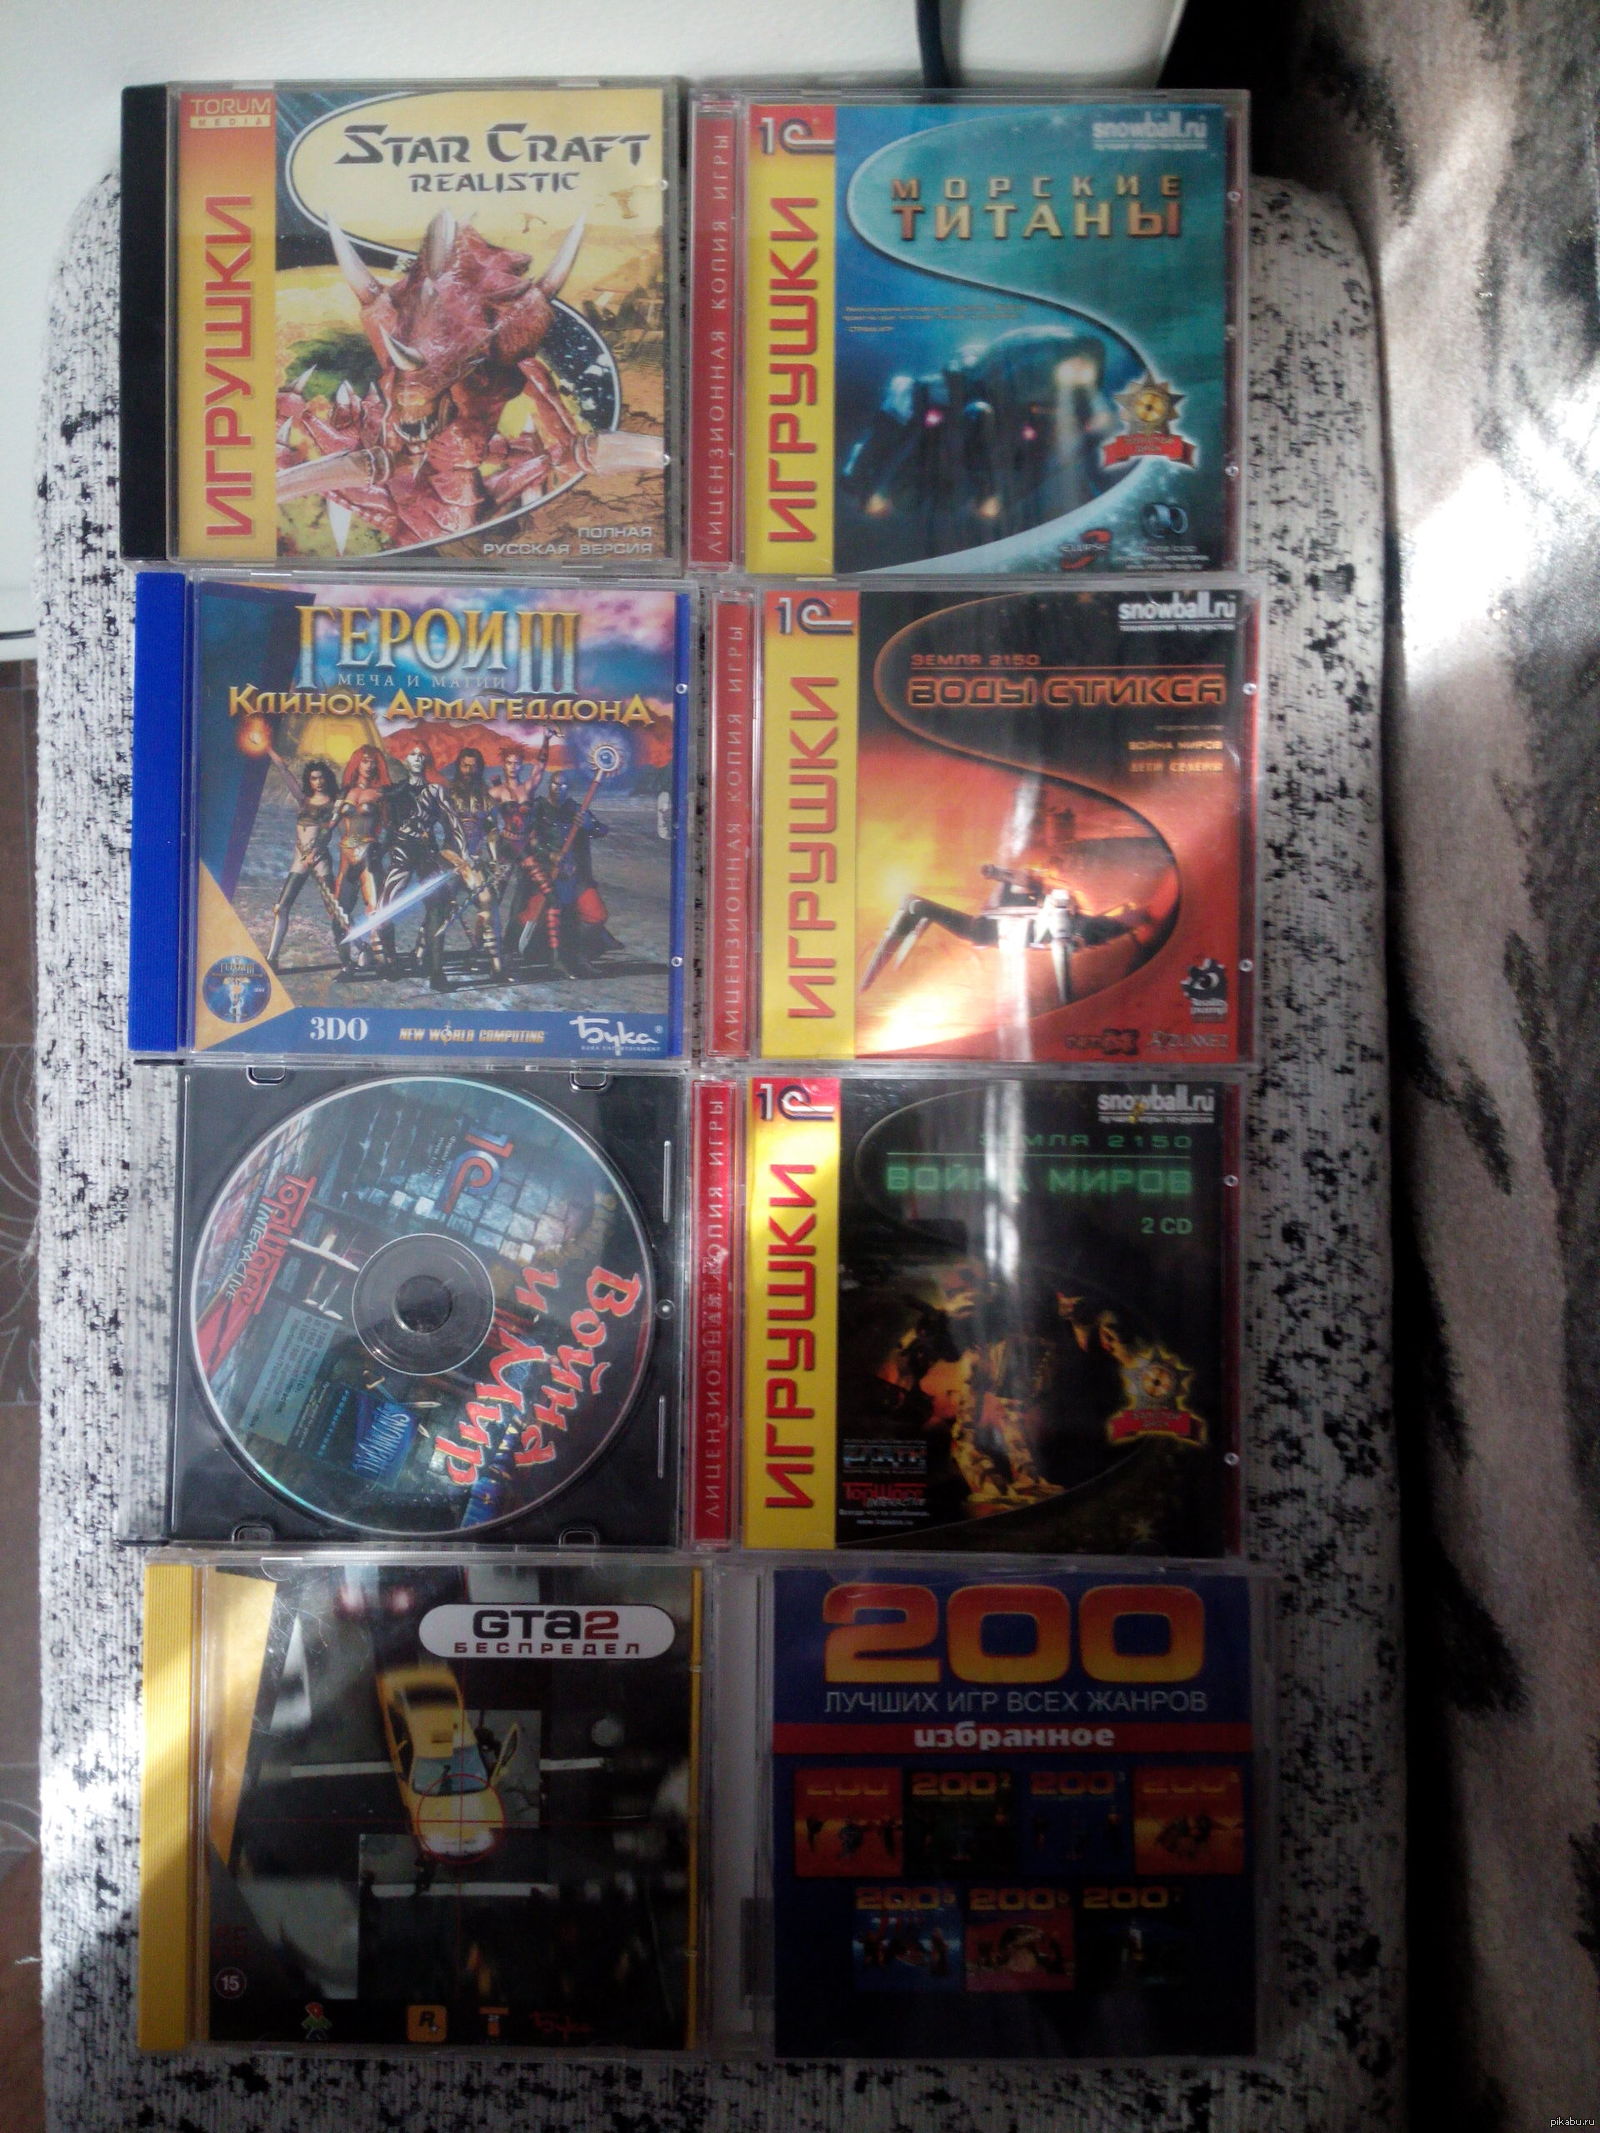 Сборник старых игр. Старые игровые диски. Игрушки диски старые игры. Старые сборники игр на дисках. Коллекция игрушек диски.